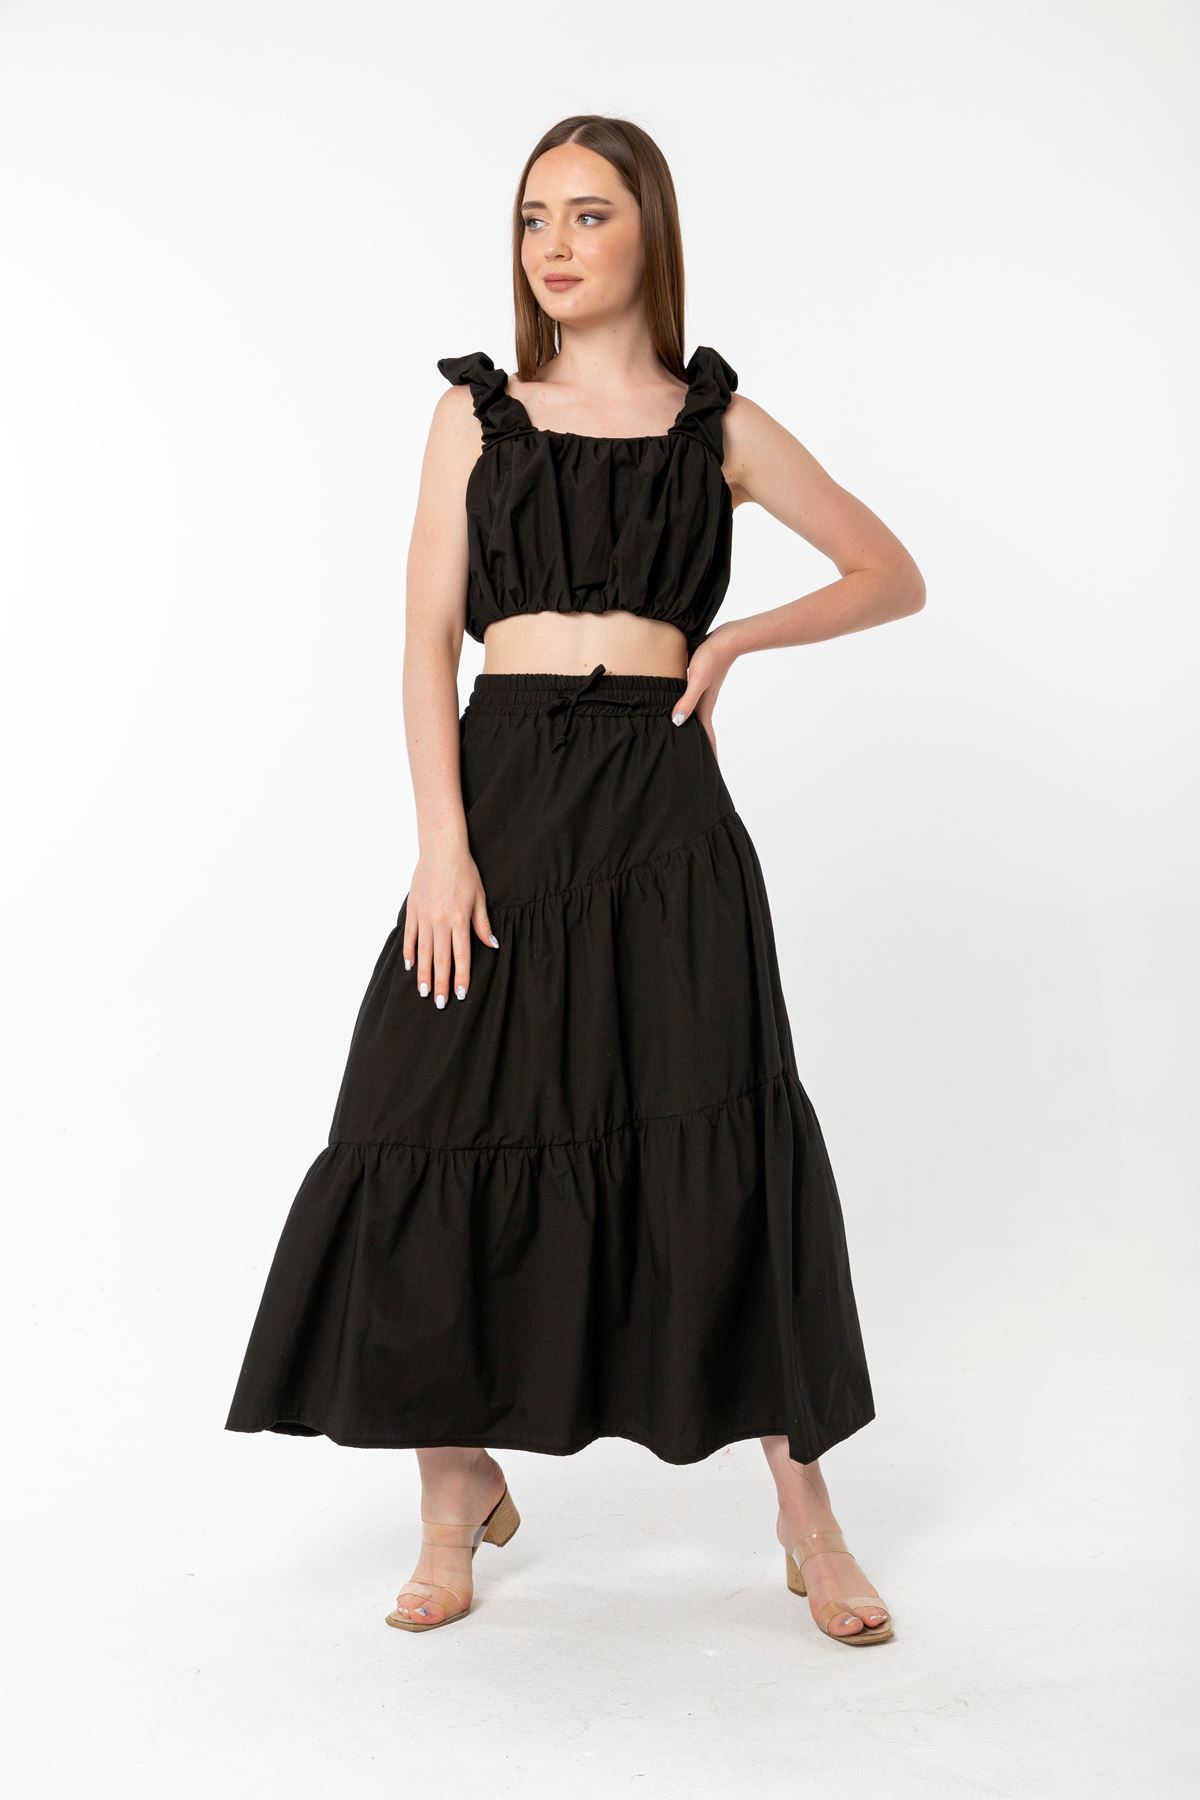 Soft Woven Fabric Long Wide Fit Elastik Waist Women'S Skirt - Black